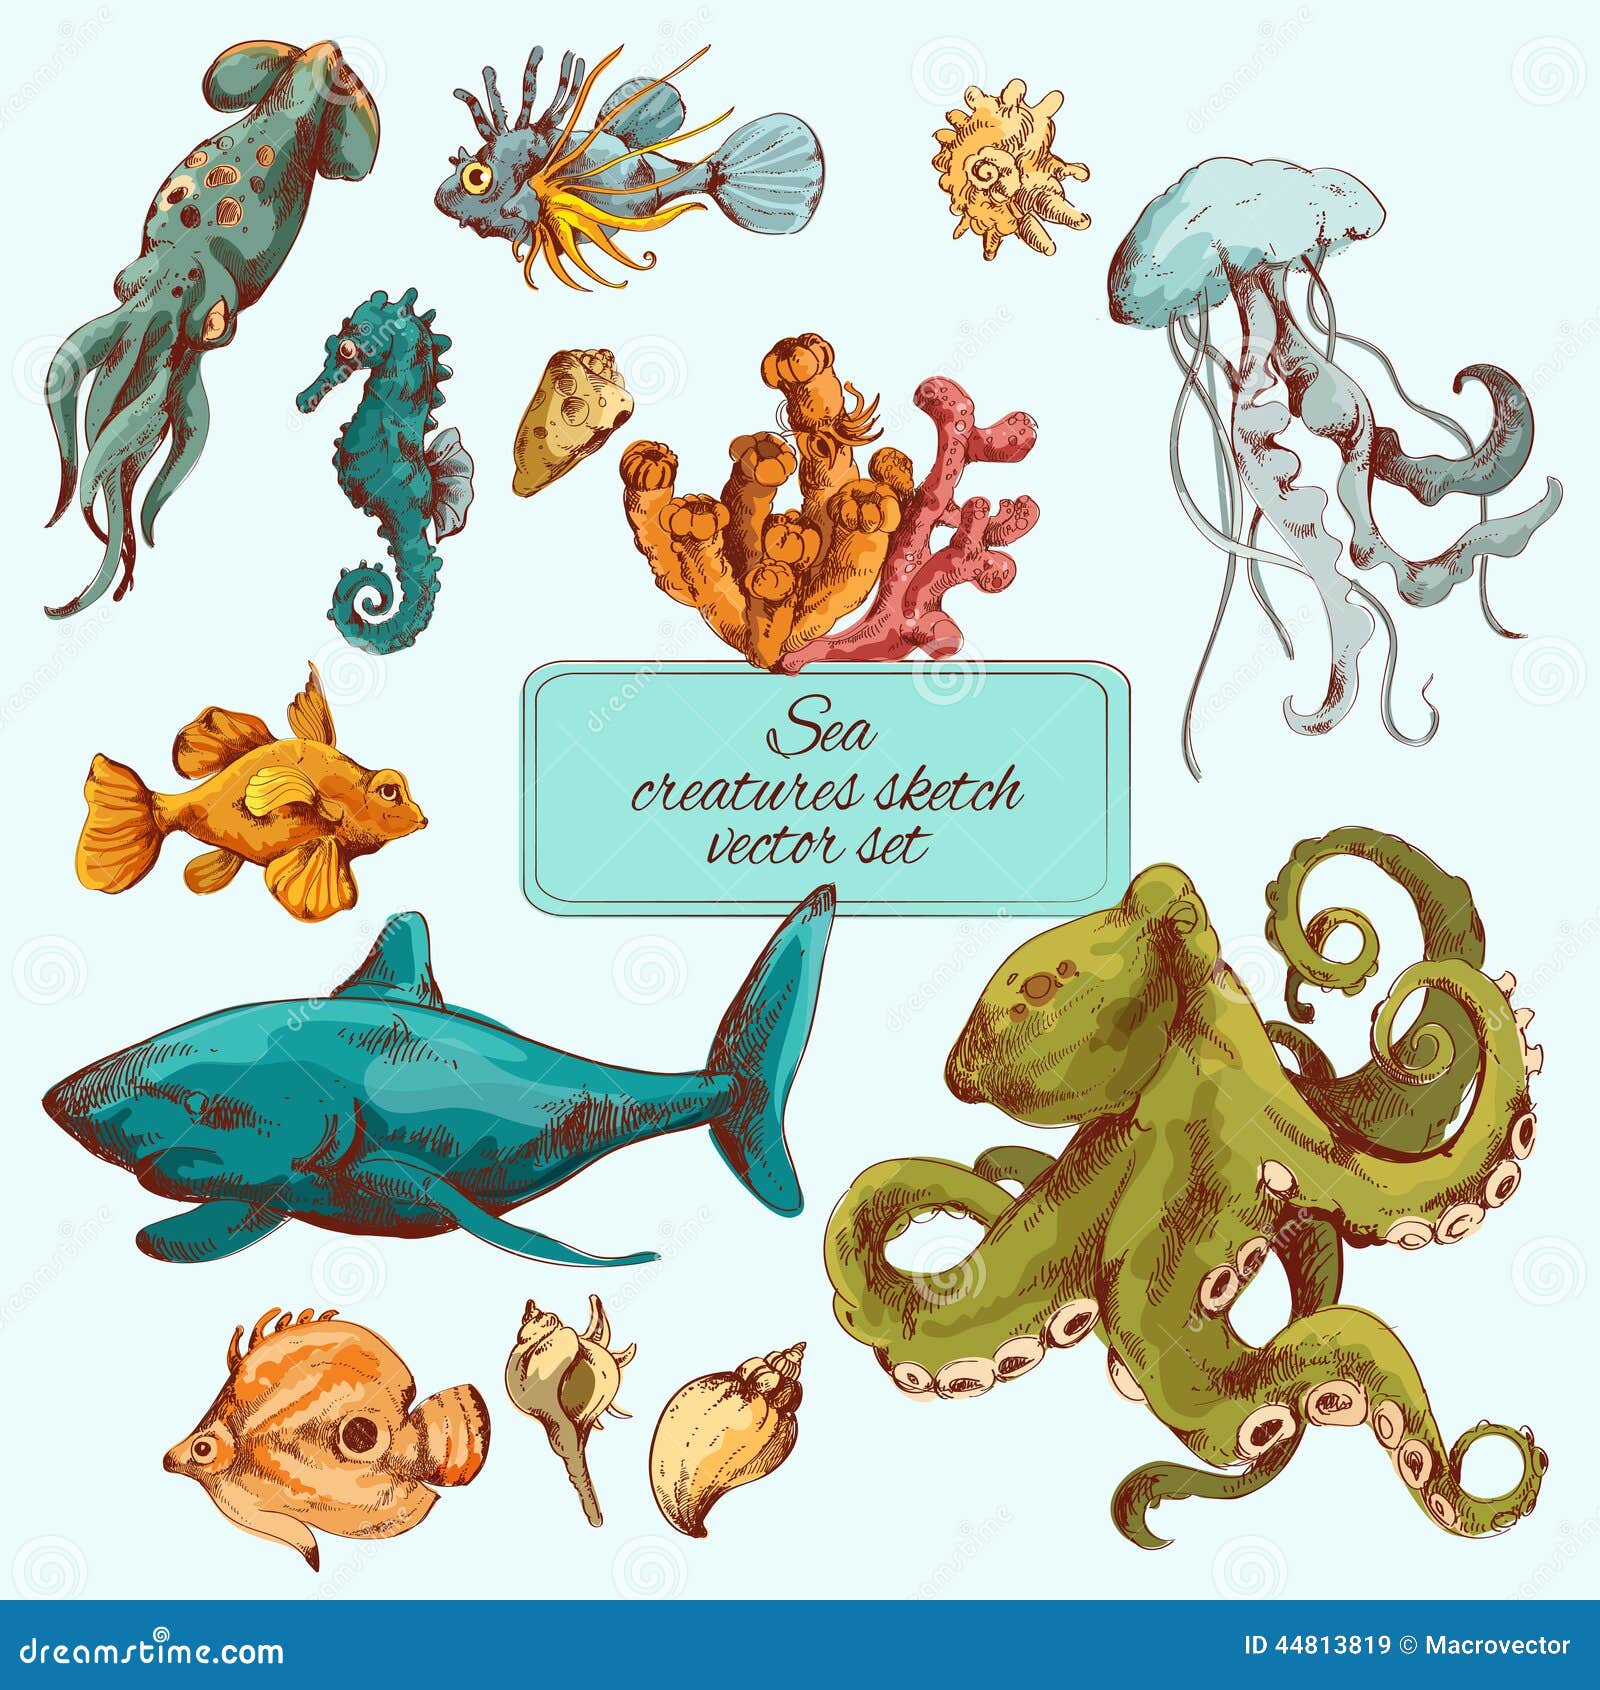 sea creatures sketch colored